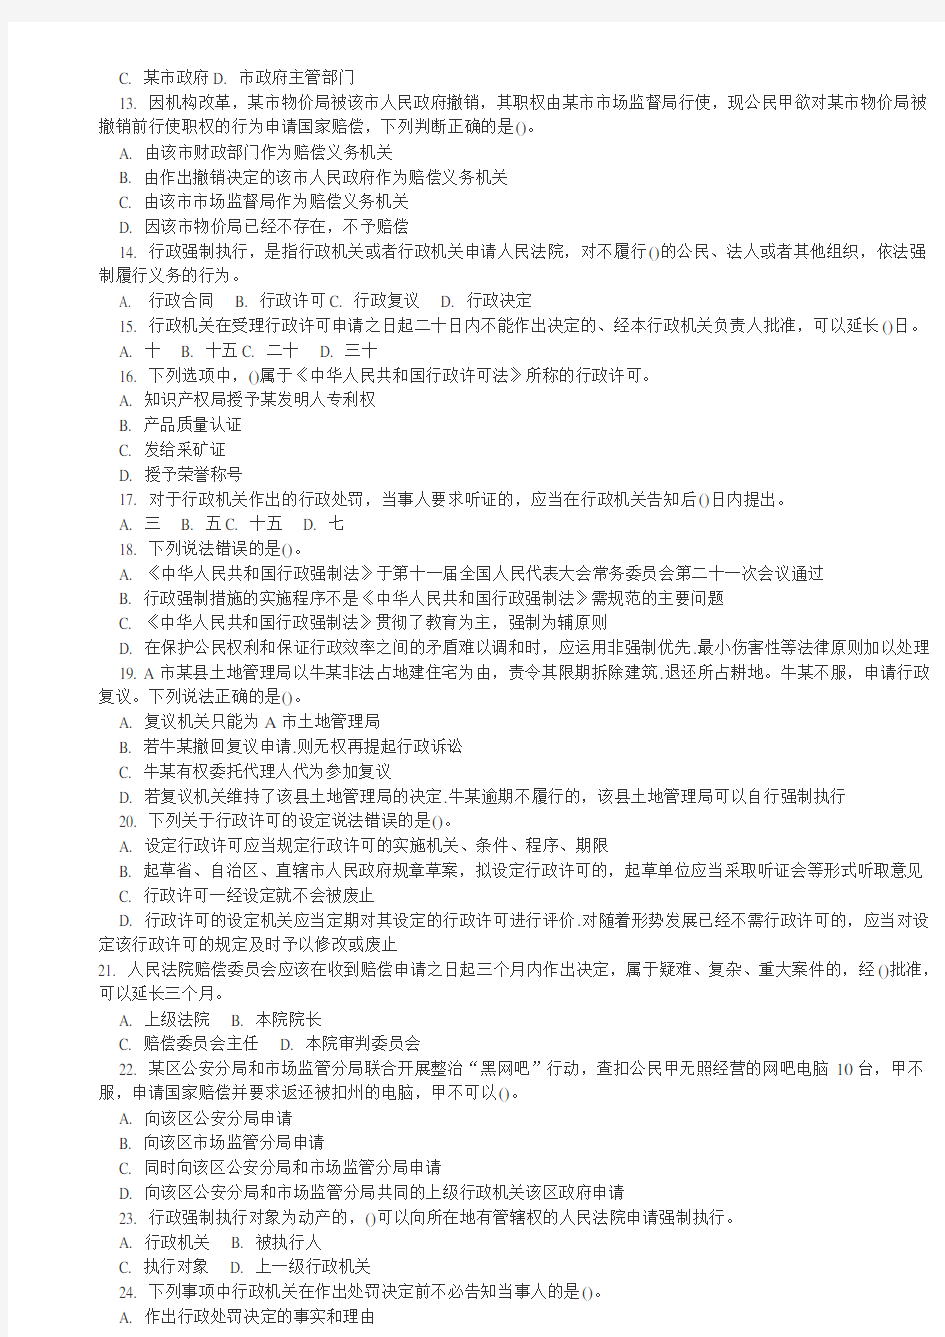 深圳市公务员行政执法素质测试试卷(最新版)